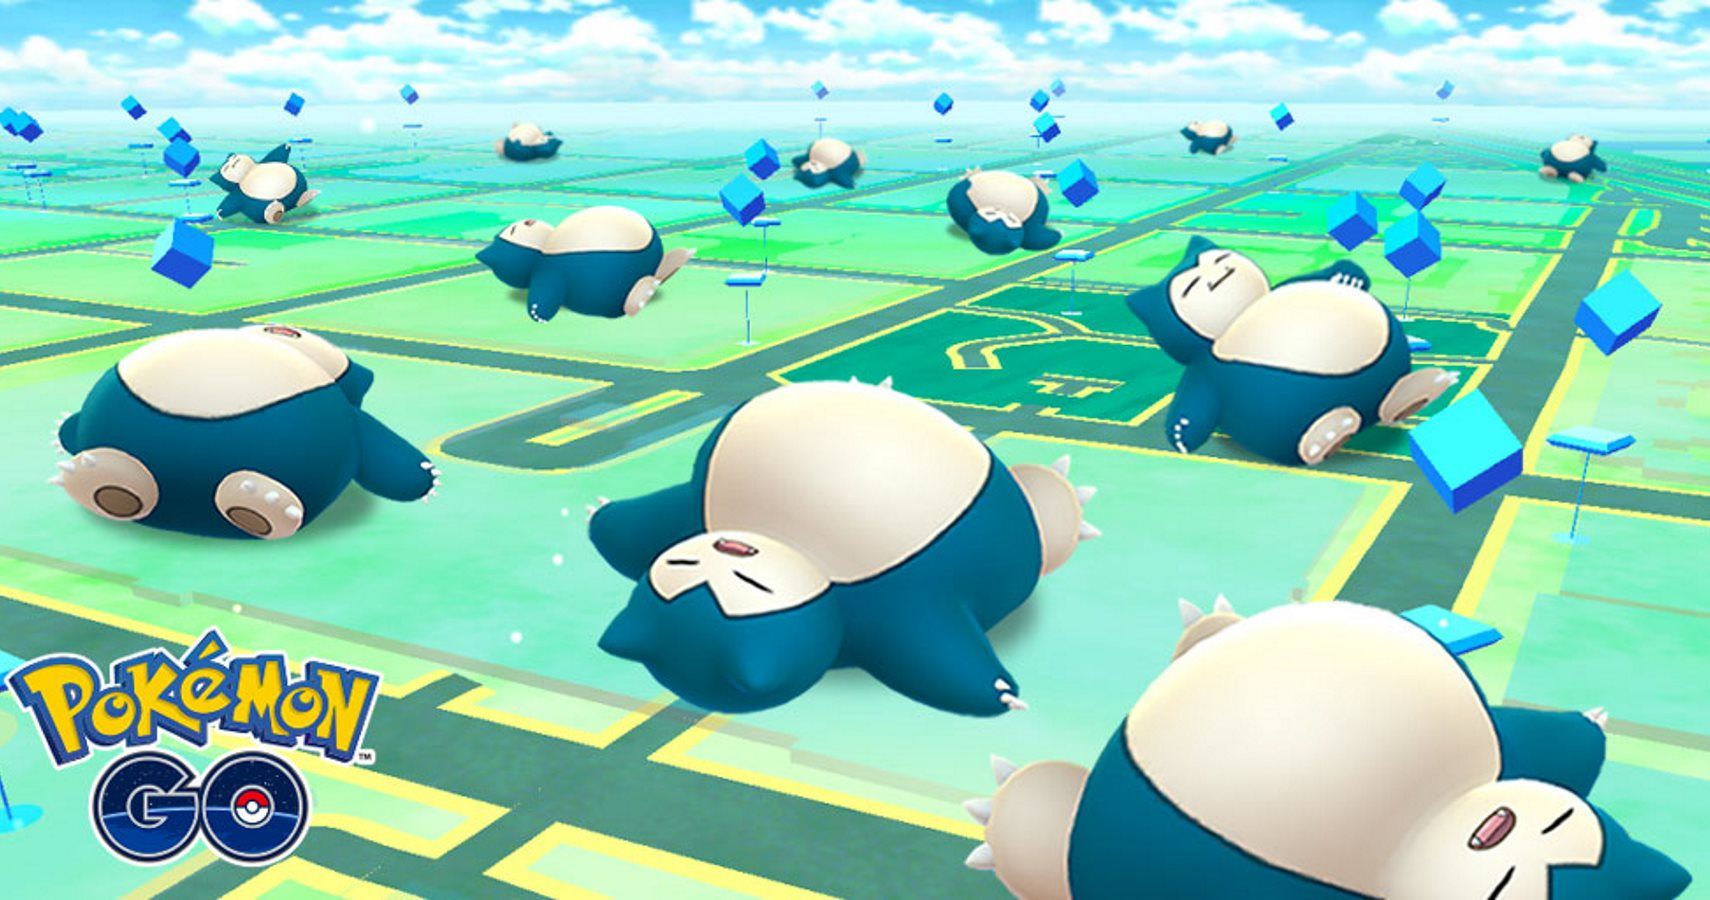 Pokémon GO Snoozing Snorlax Event Has Begun To Promote Pokémon Sleep